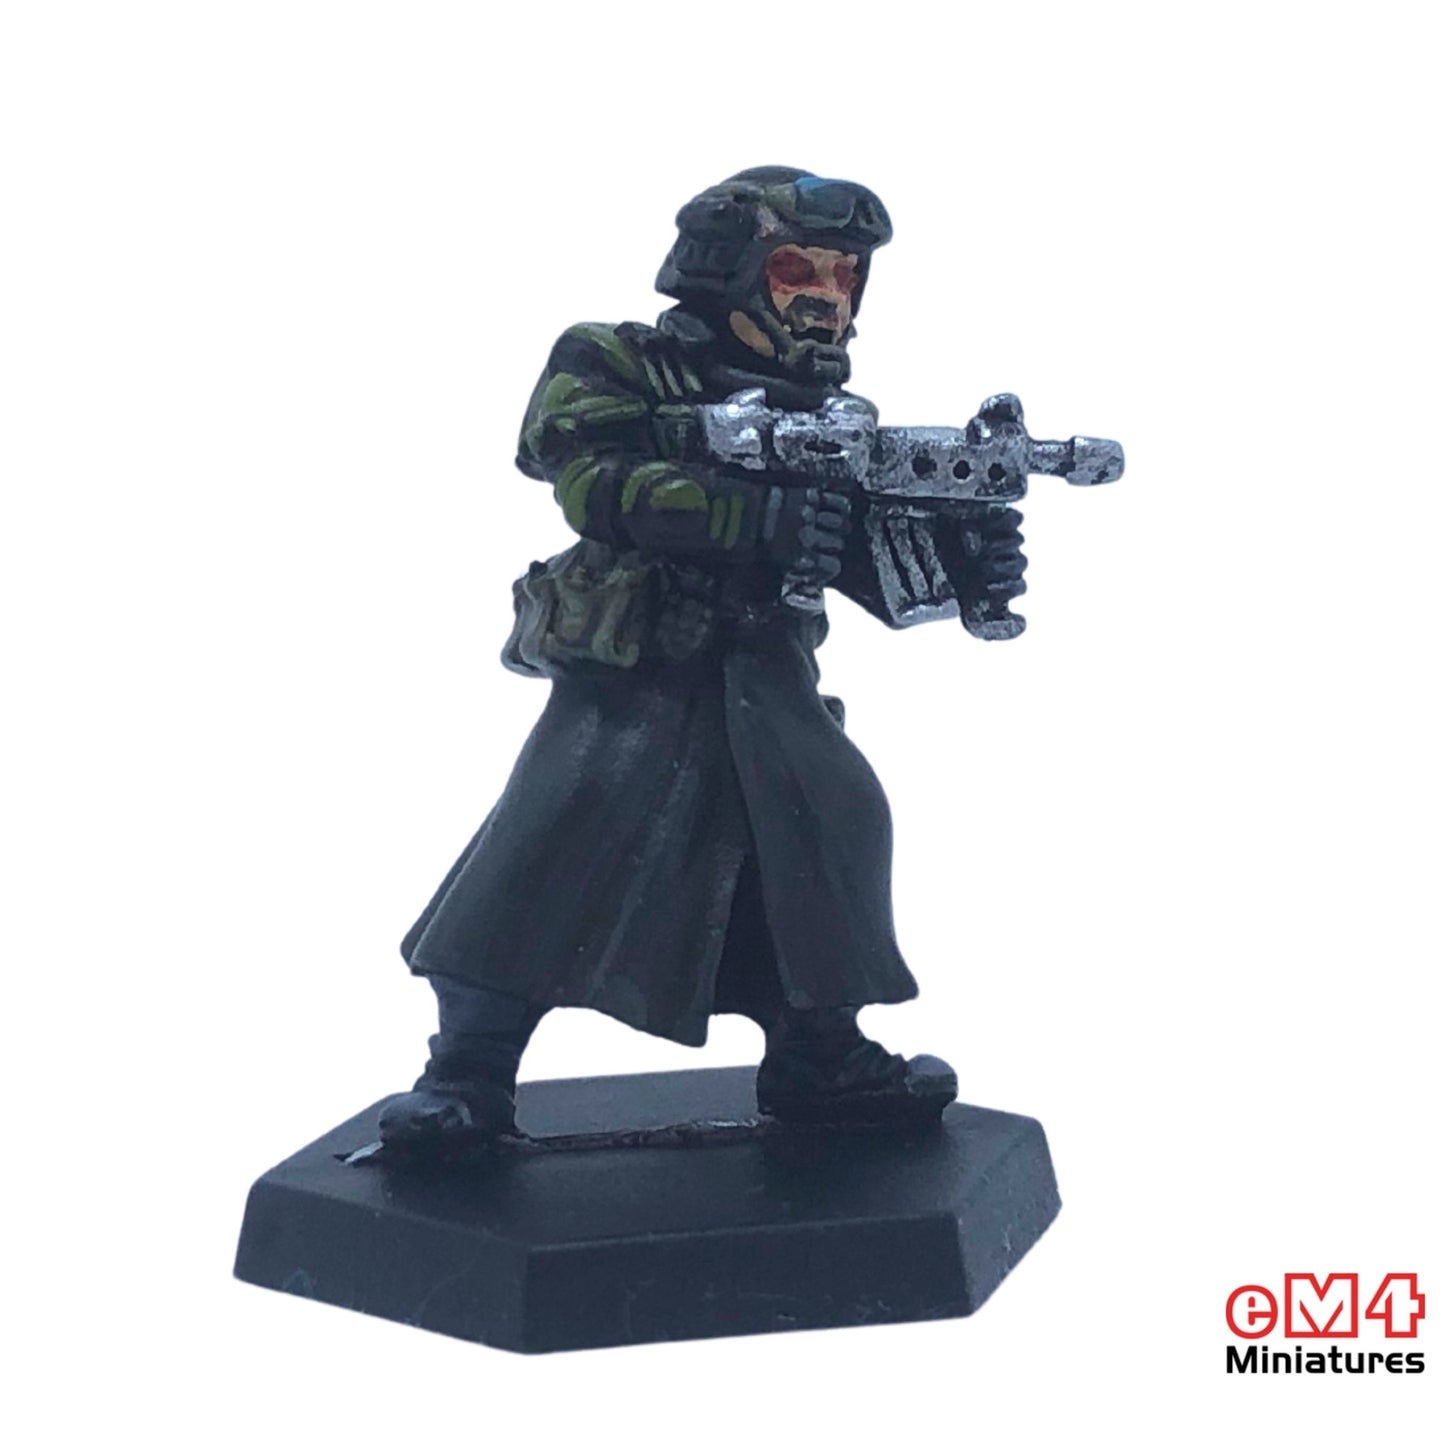 Mercenary with Sub Machine Gun Miniature